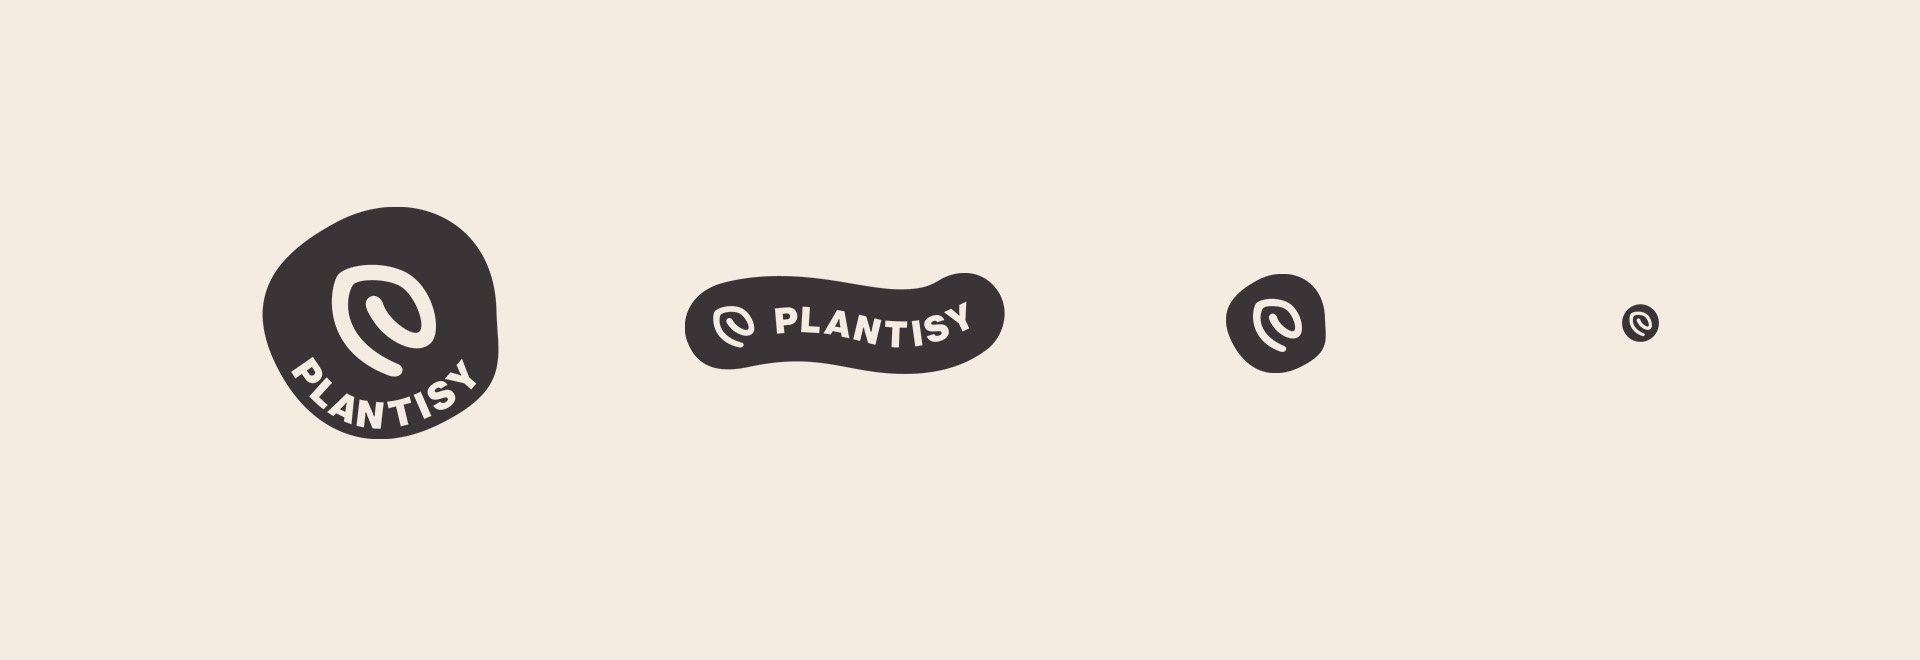 das plantisy logo in drei varianten für verschiedene anwendungen